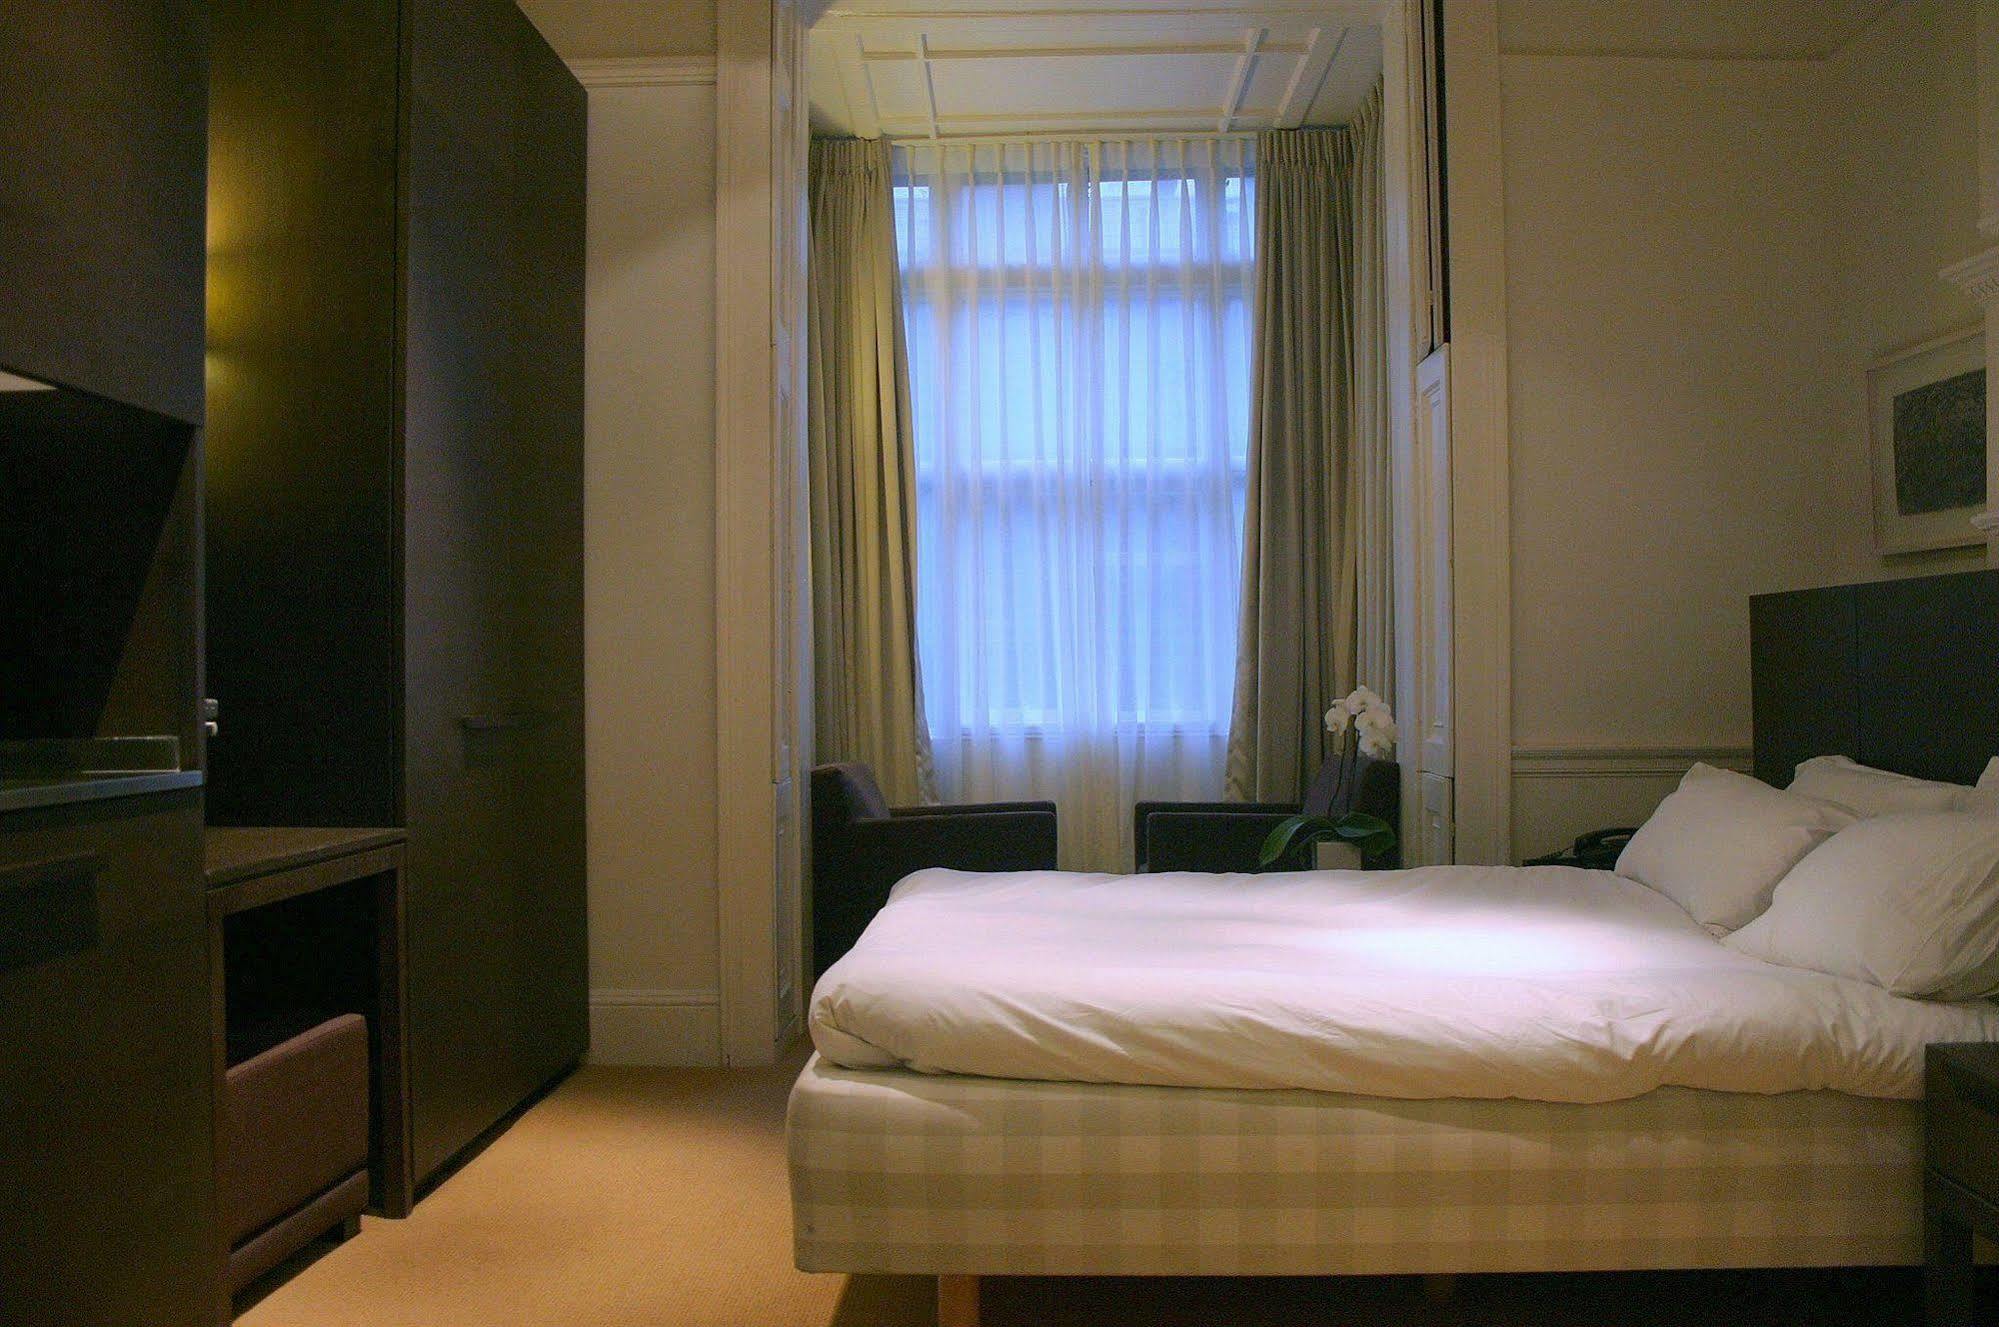 Nottingham Place Hotel Londýn Exteriér fotografie